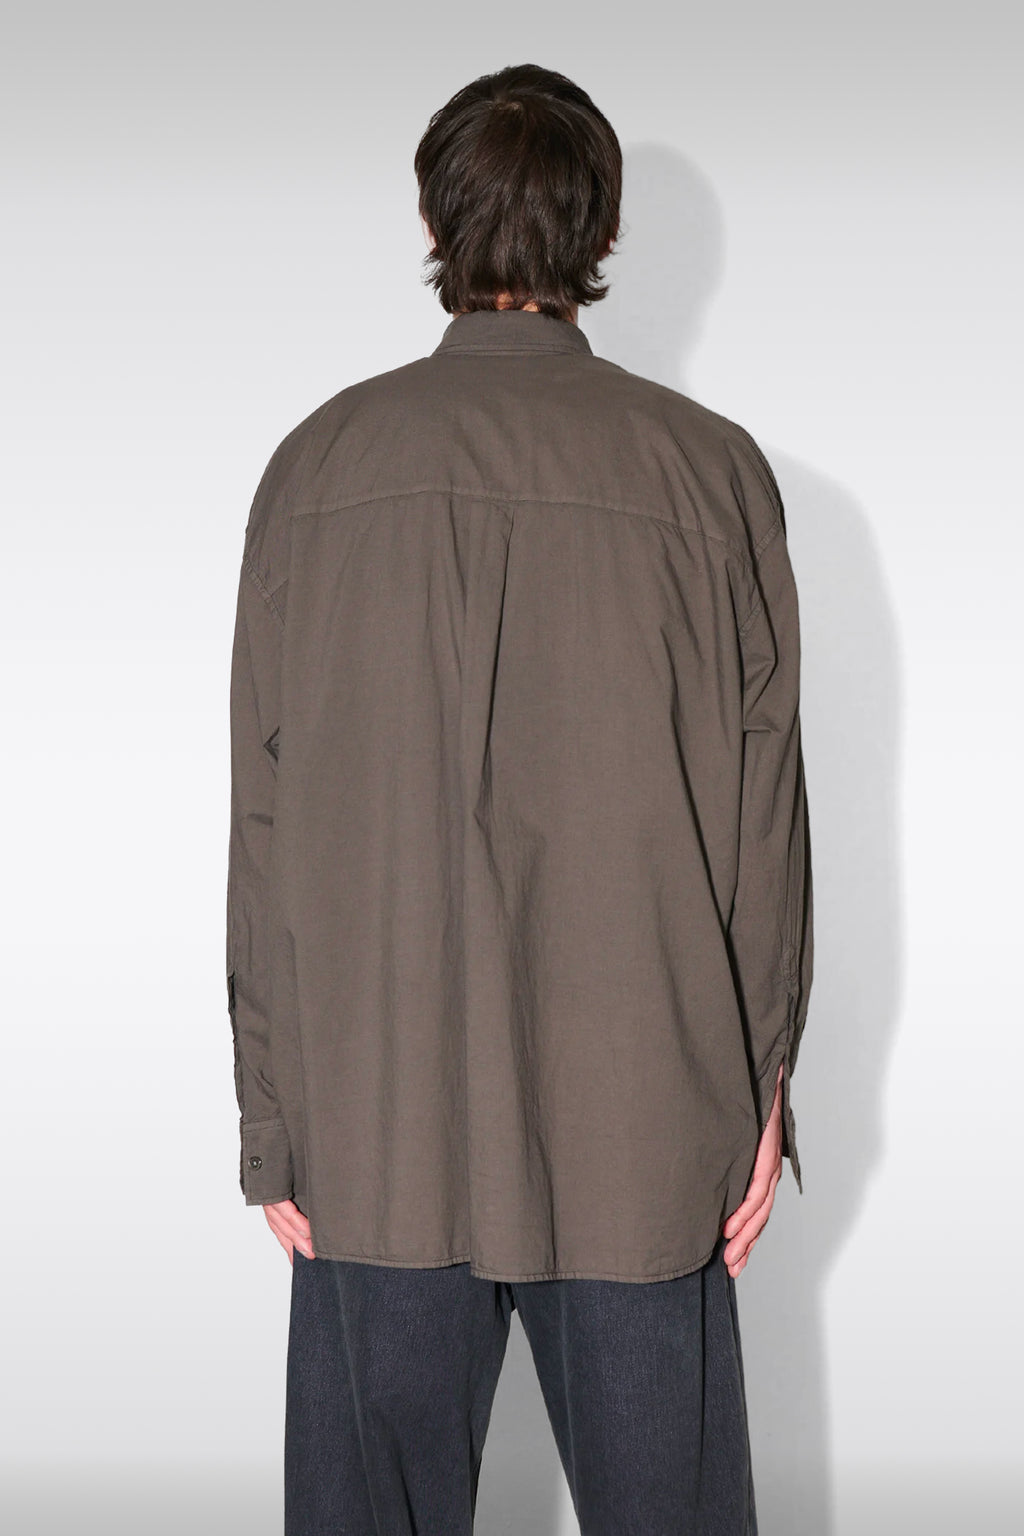 alt-image__Camicia-in-cotone-marrone-lavato---Borrowed-BD-Shirt